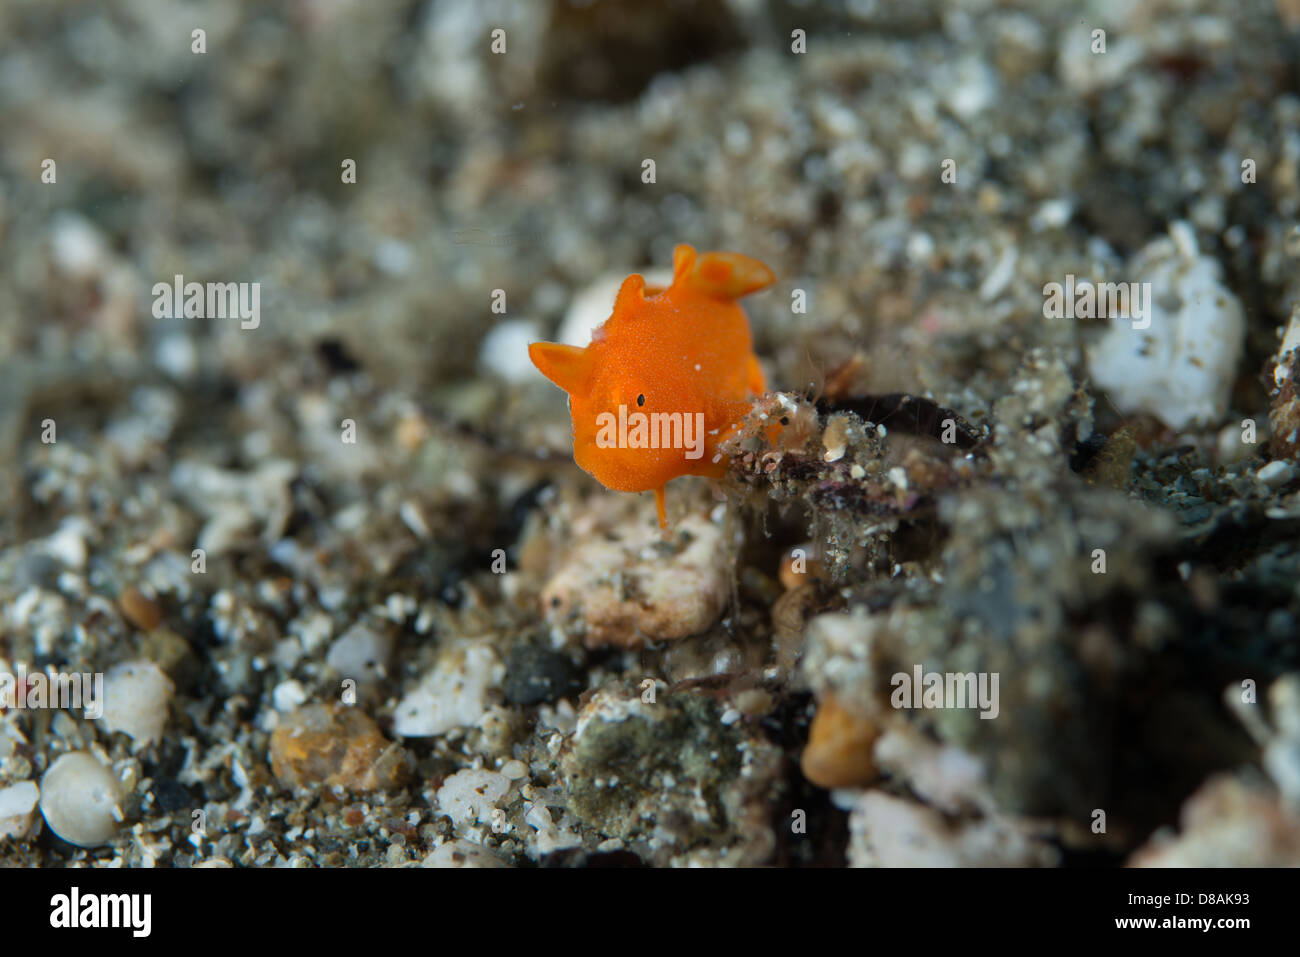 Le plus petit poisson grenouille peint orange minuscule (antennarius pictus) juste un peu plus gros qu'un grain de sable. Banque D'Images